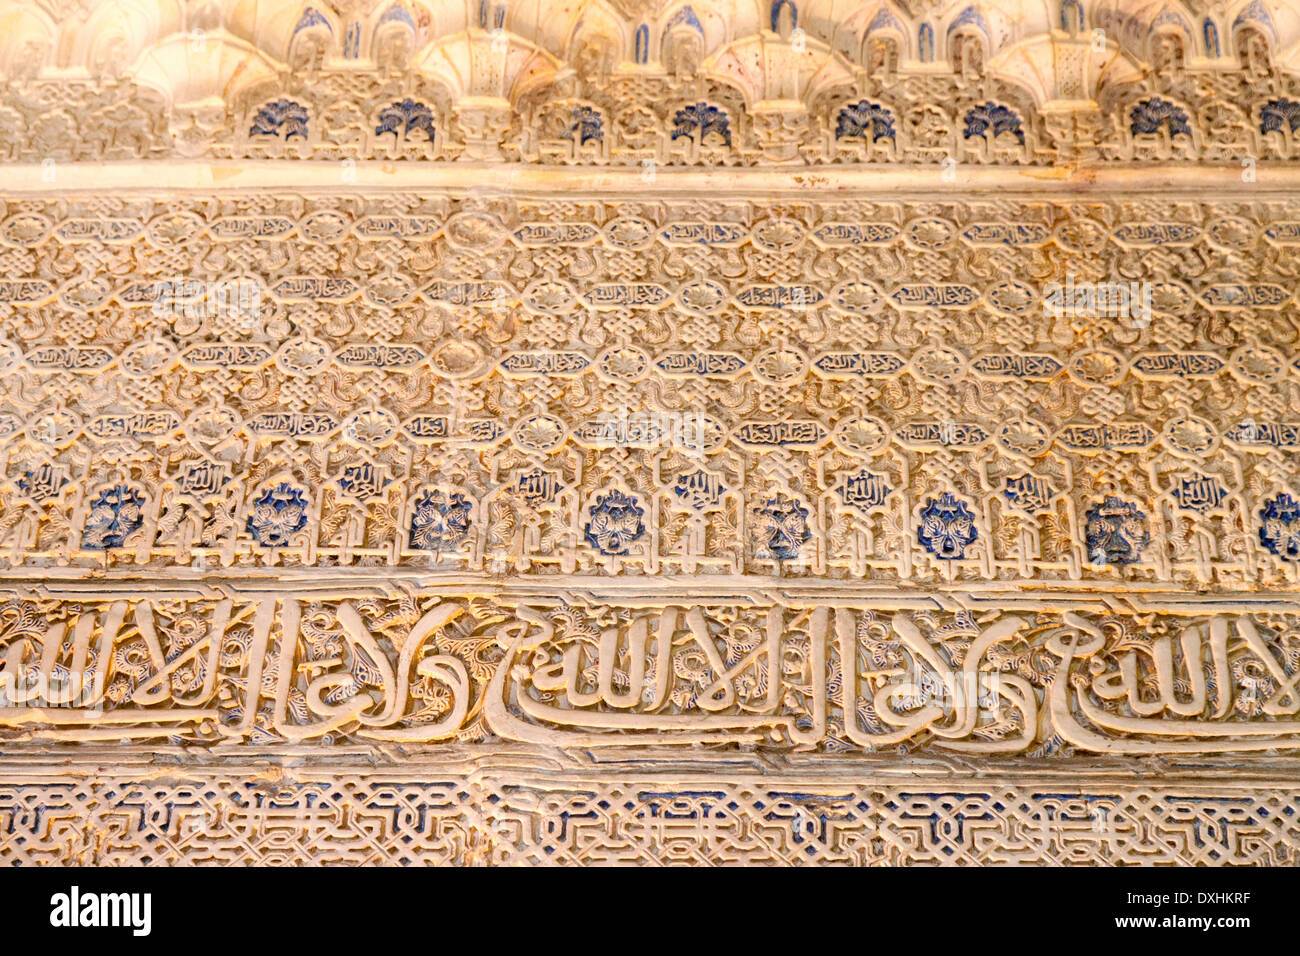 Detalle de intrincado tallado morisco yeserías de estuco en las paredes de los palacios nazaríes, la Alhambra, Granada, España Foto de stock